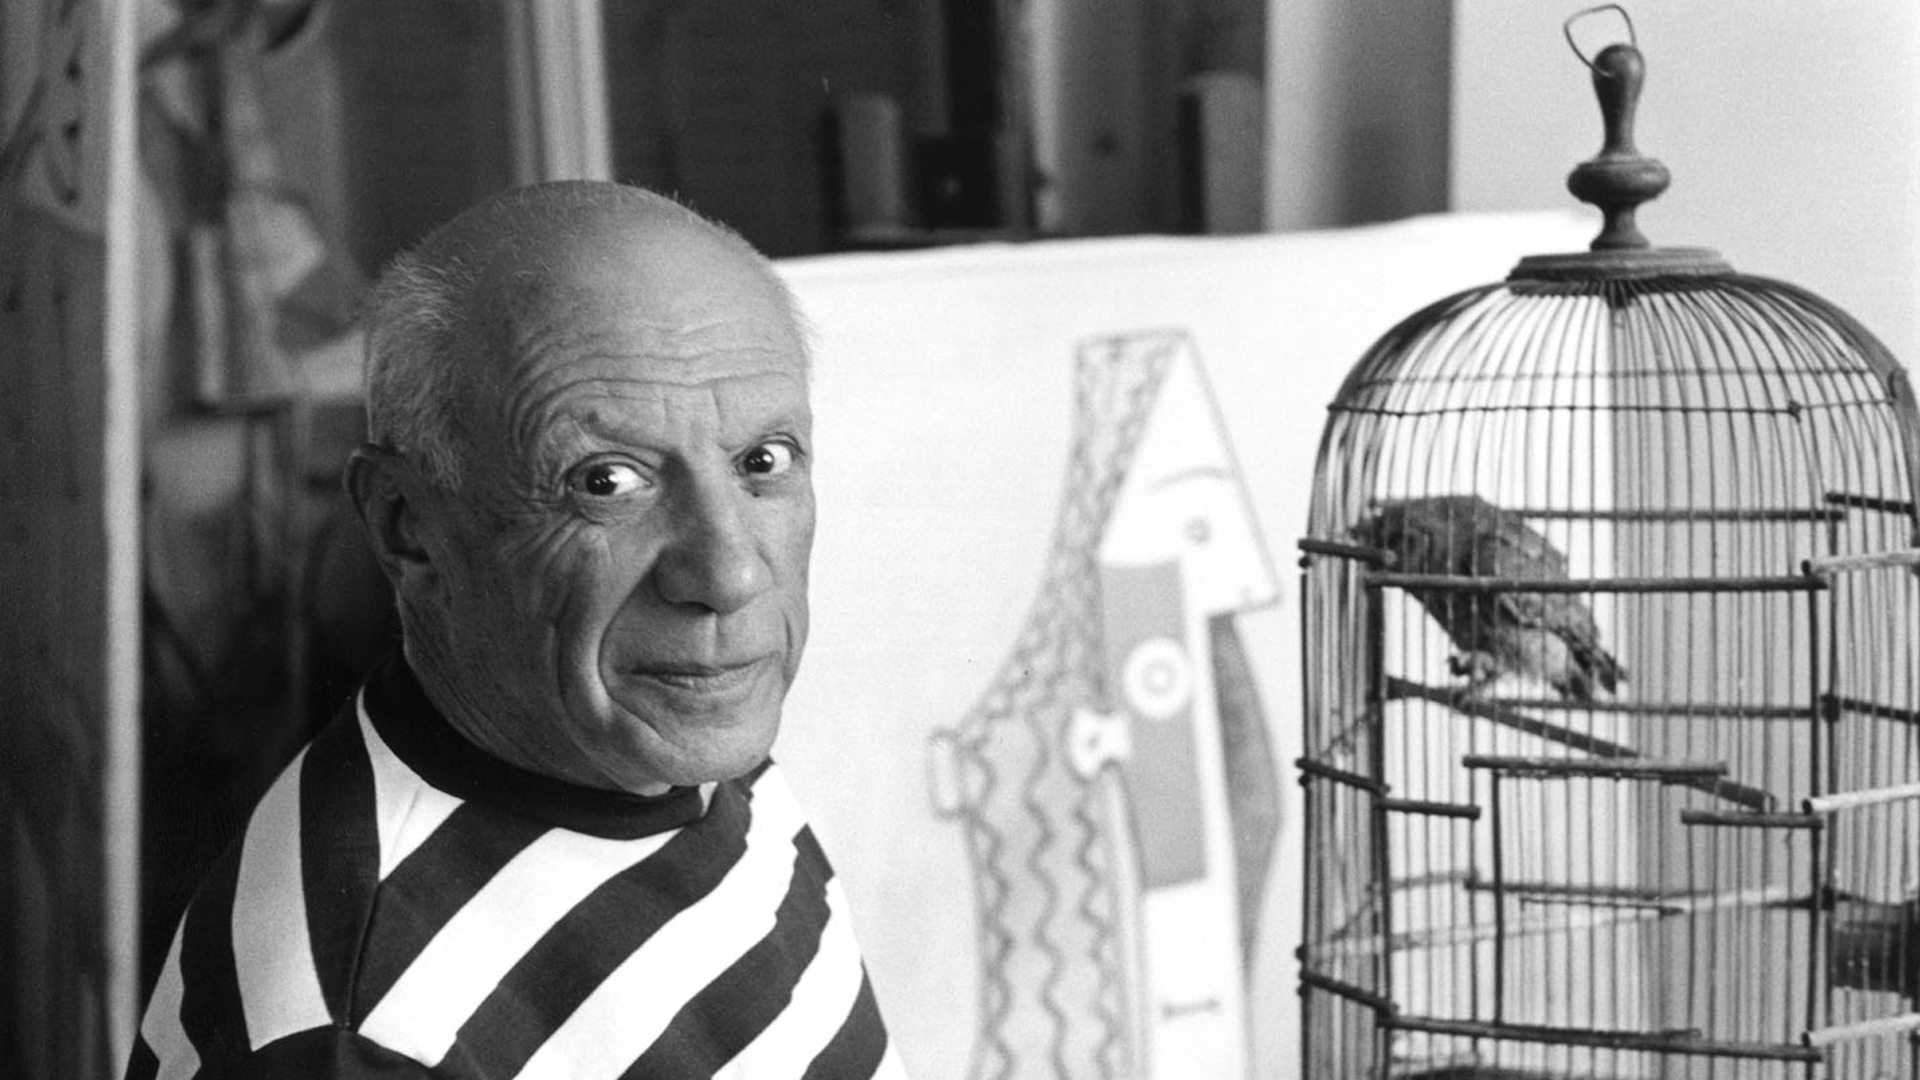 El nombre completo de Pablo Picasso tiene 23 palabras: se llama Pablo Diego José Francisco de Paula Juan Nepomuceno María de los Remedios Cipriano de la Santísima Trinidad Mártir Patricio Clito Ruiz y Picasso